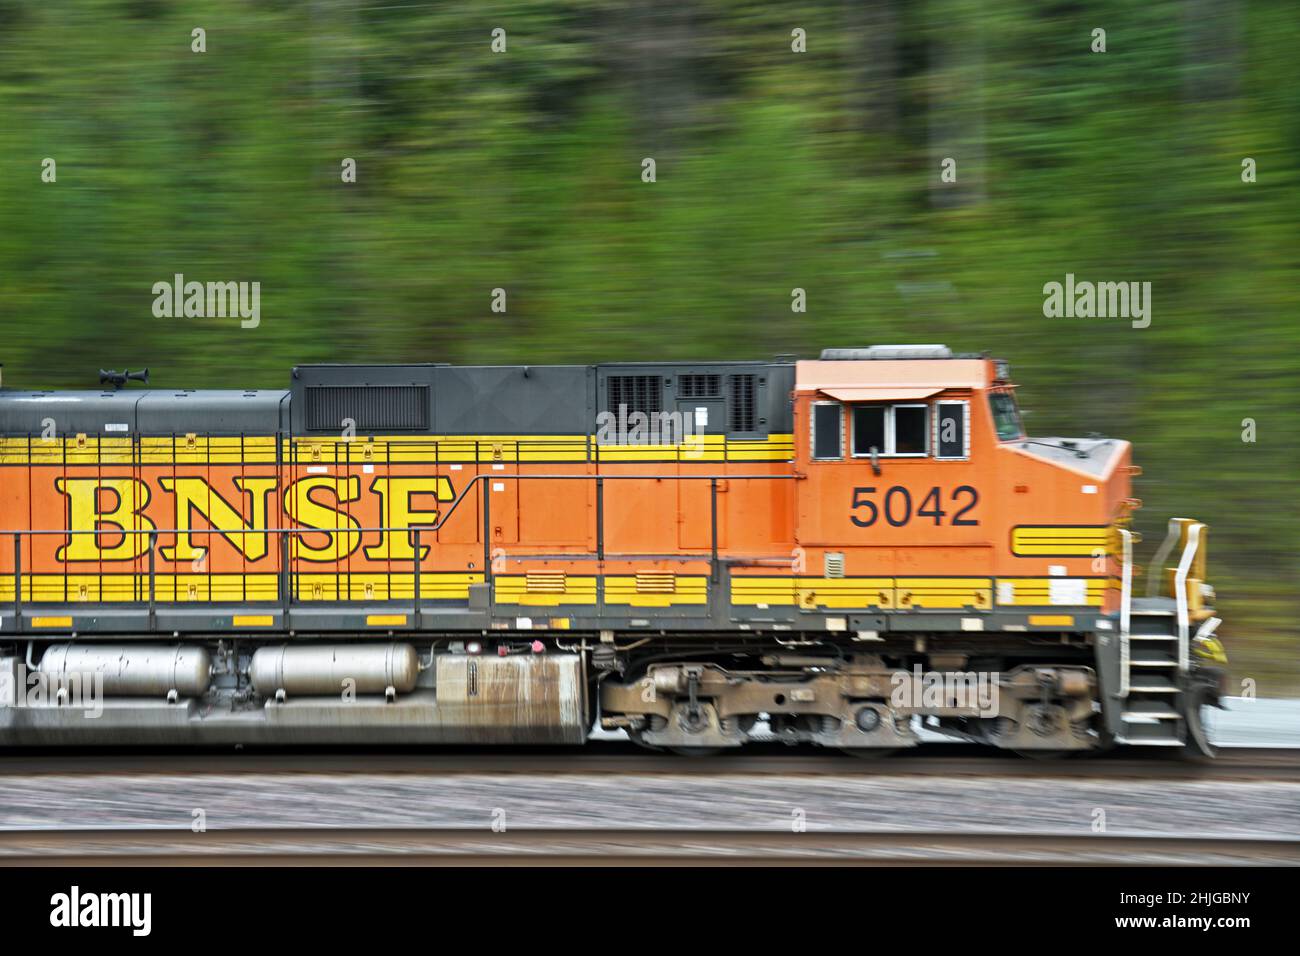 Burlington Northern Santa Fe train Engine 5042 en descendant la route Northern Transcon qui relie Seattle à Chicago.Près de Troy, Montana. Banque D'Images